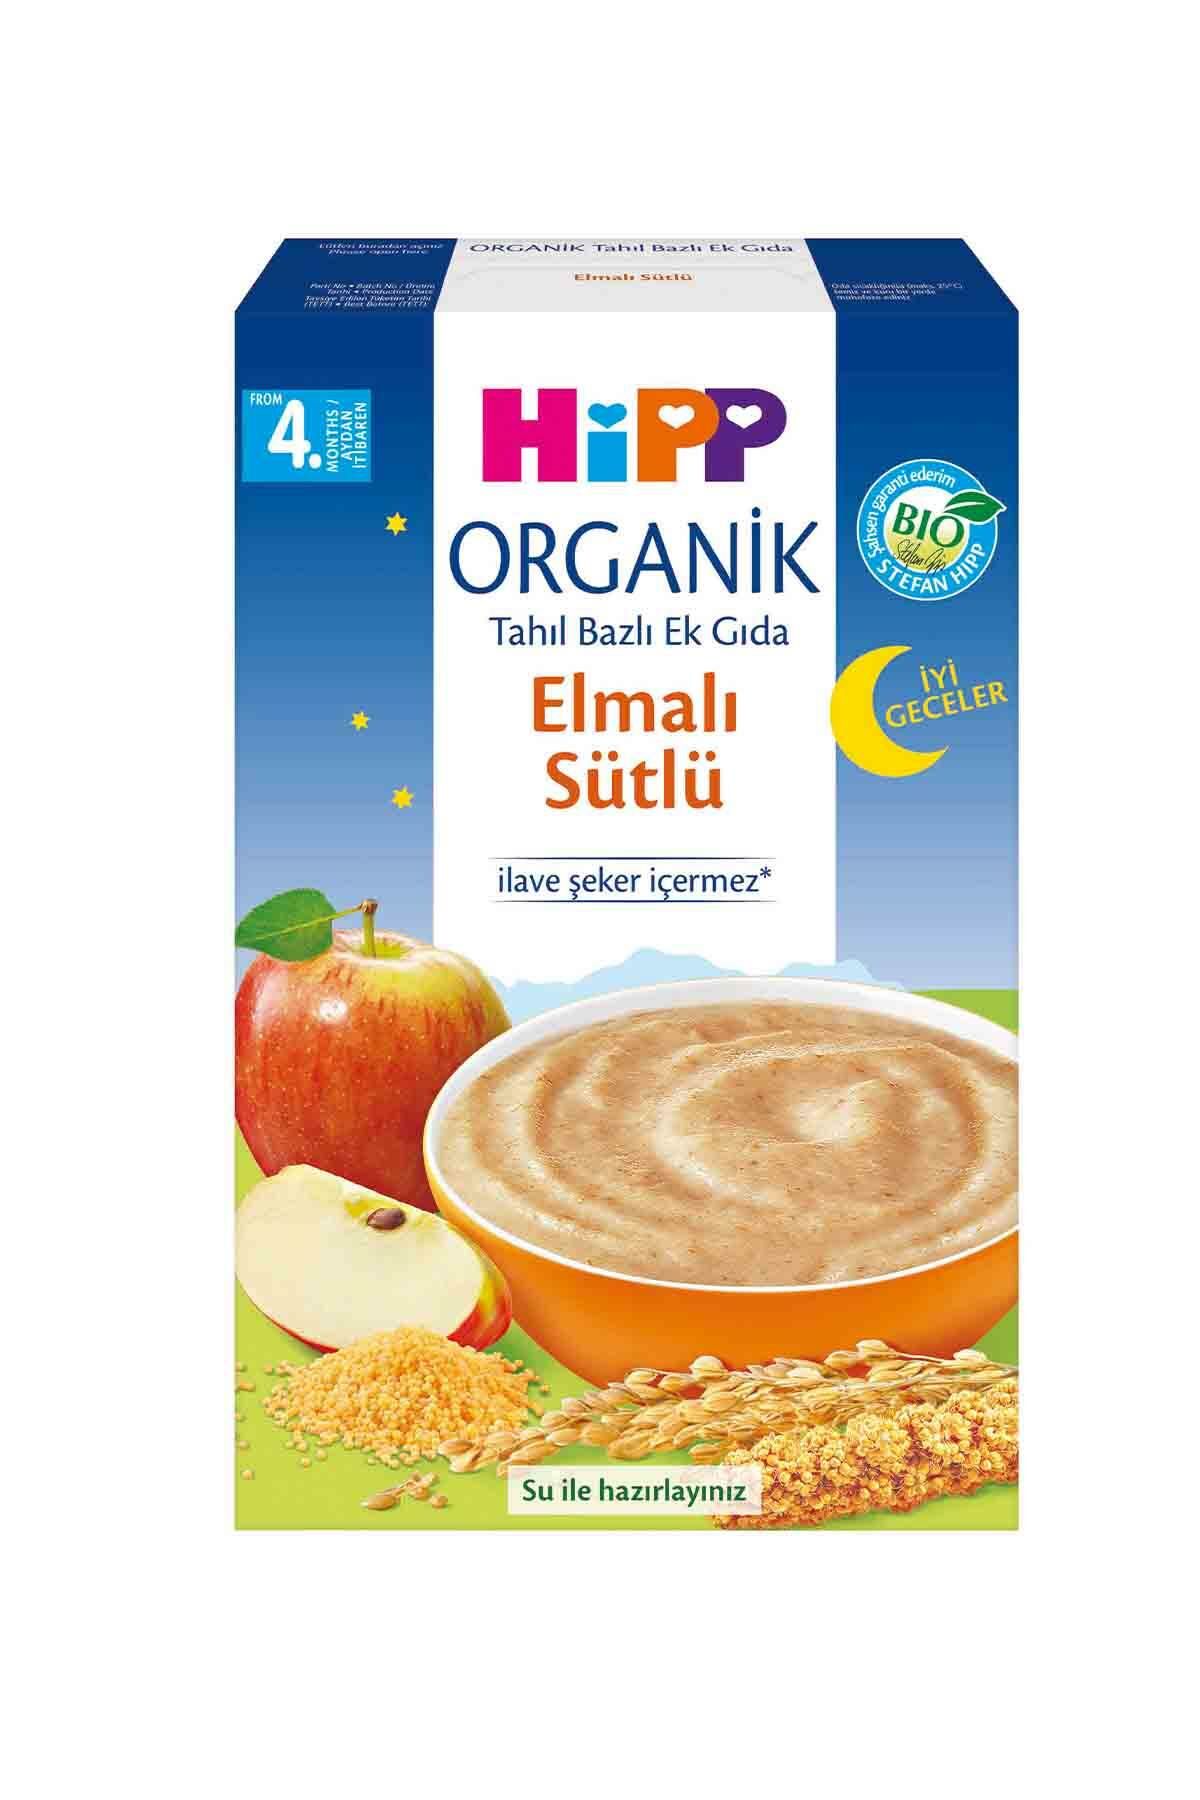 HiPP Organik İyi Geceler  Elmalı Sütlü Tahıl Bazlı